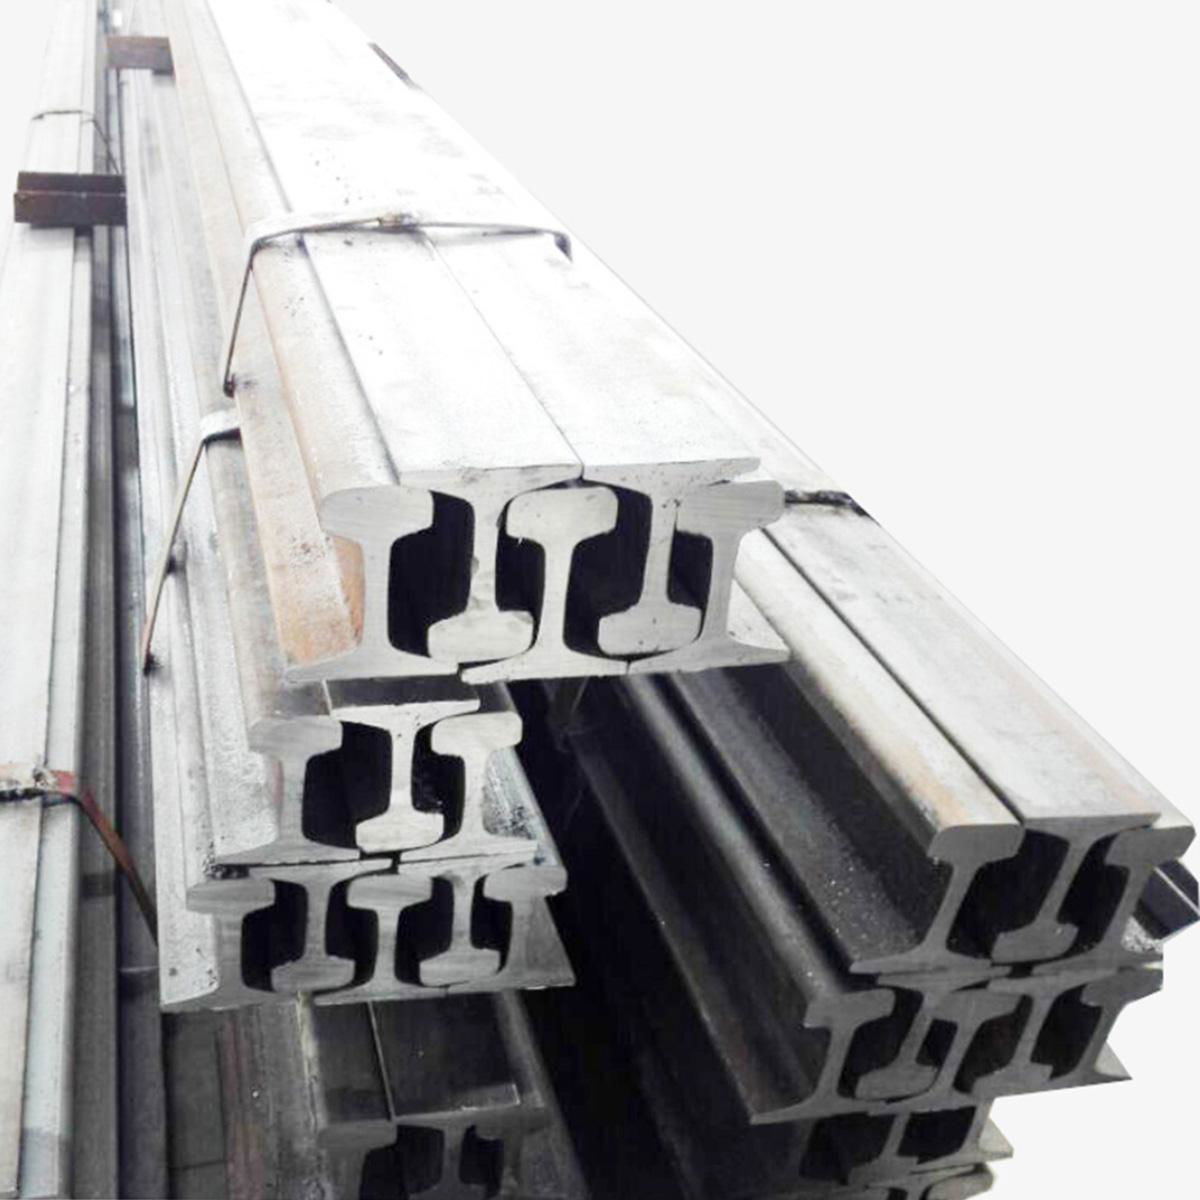 UIC54 Steel Rails 3